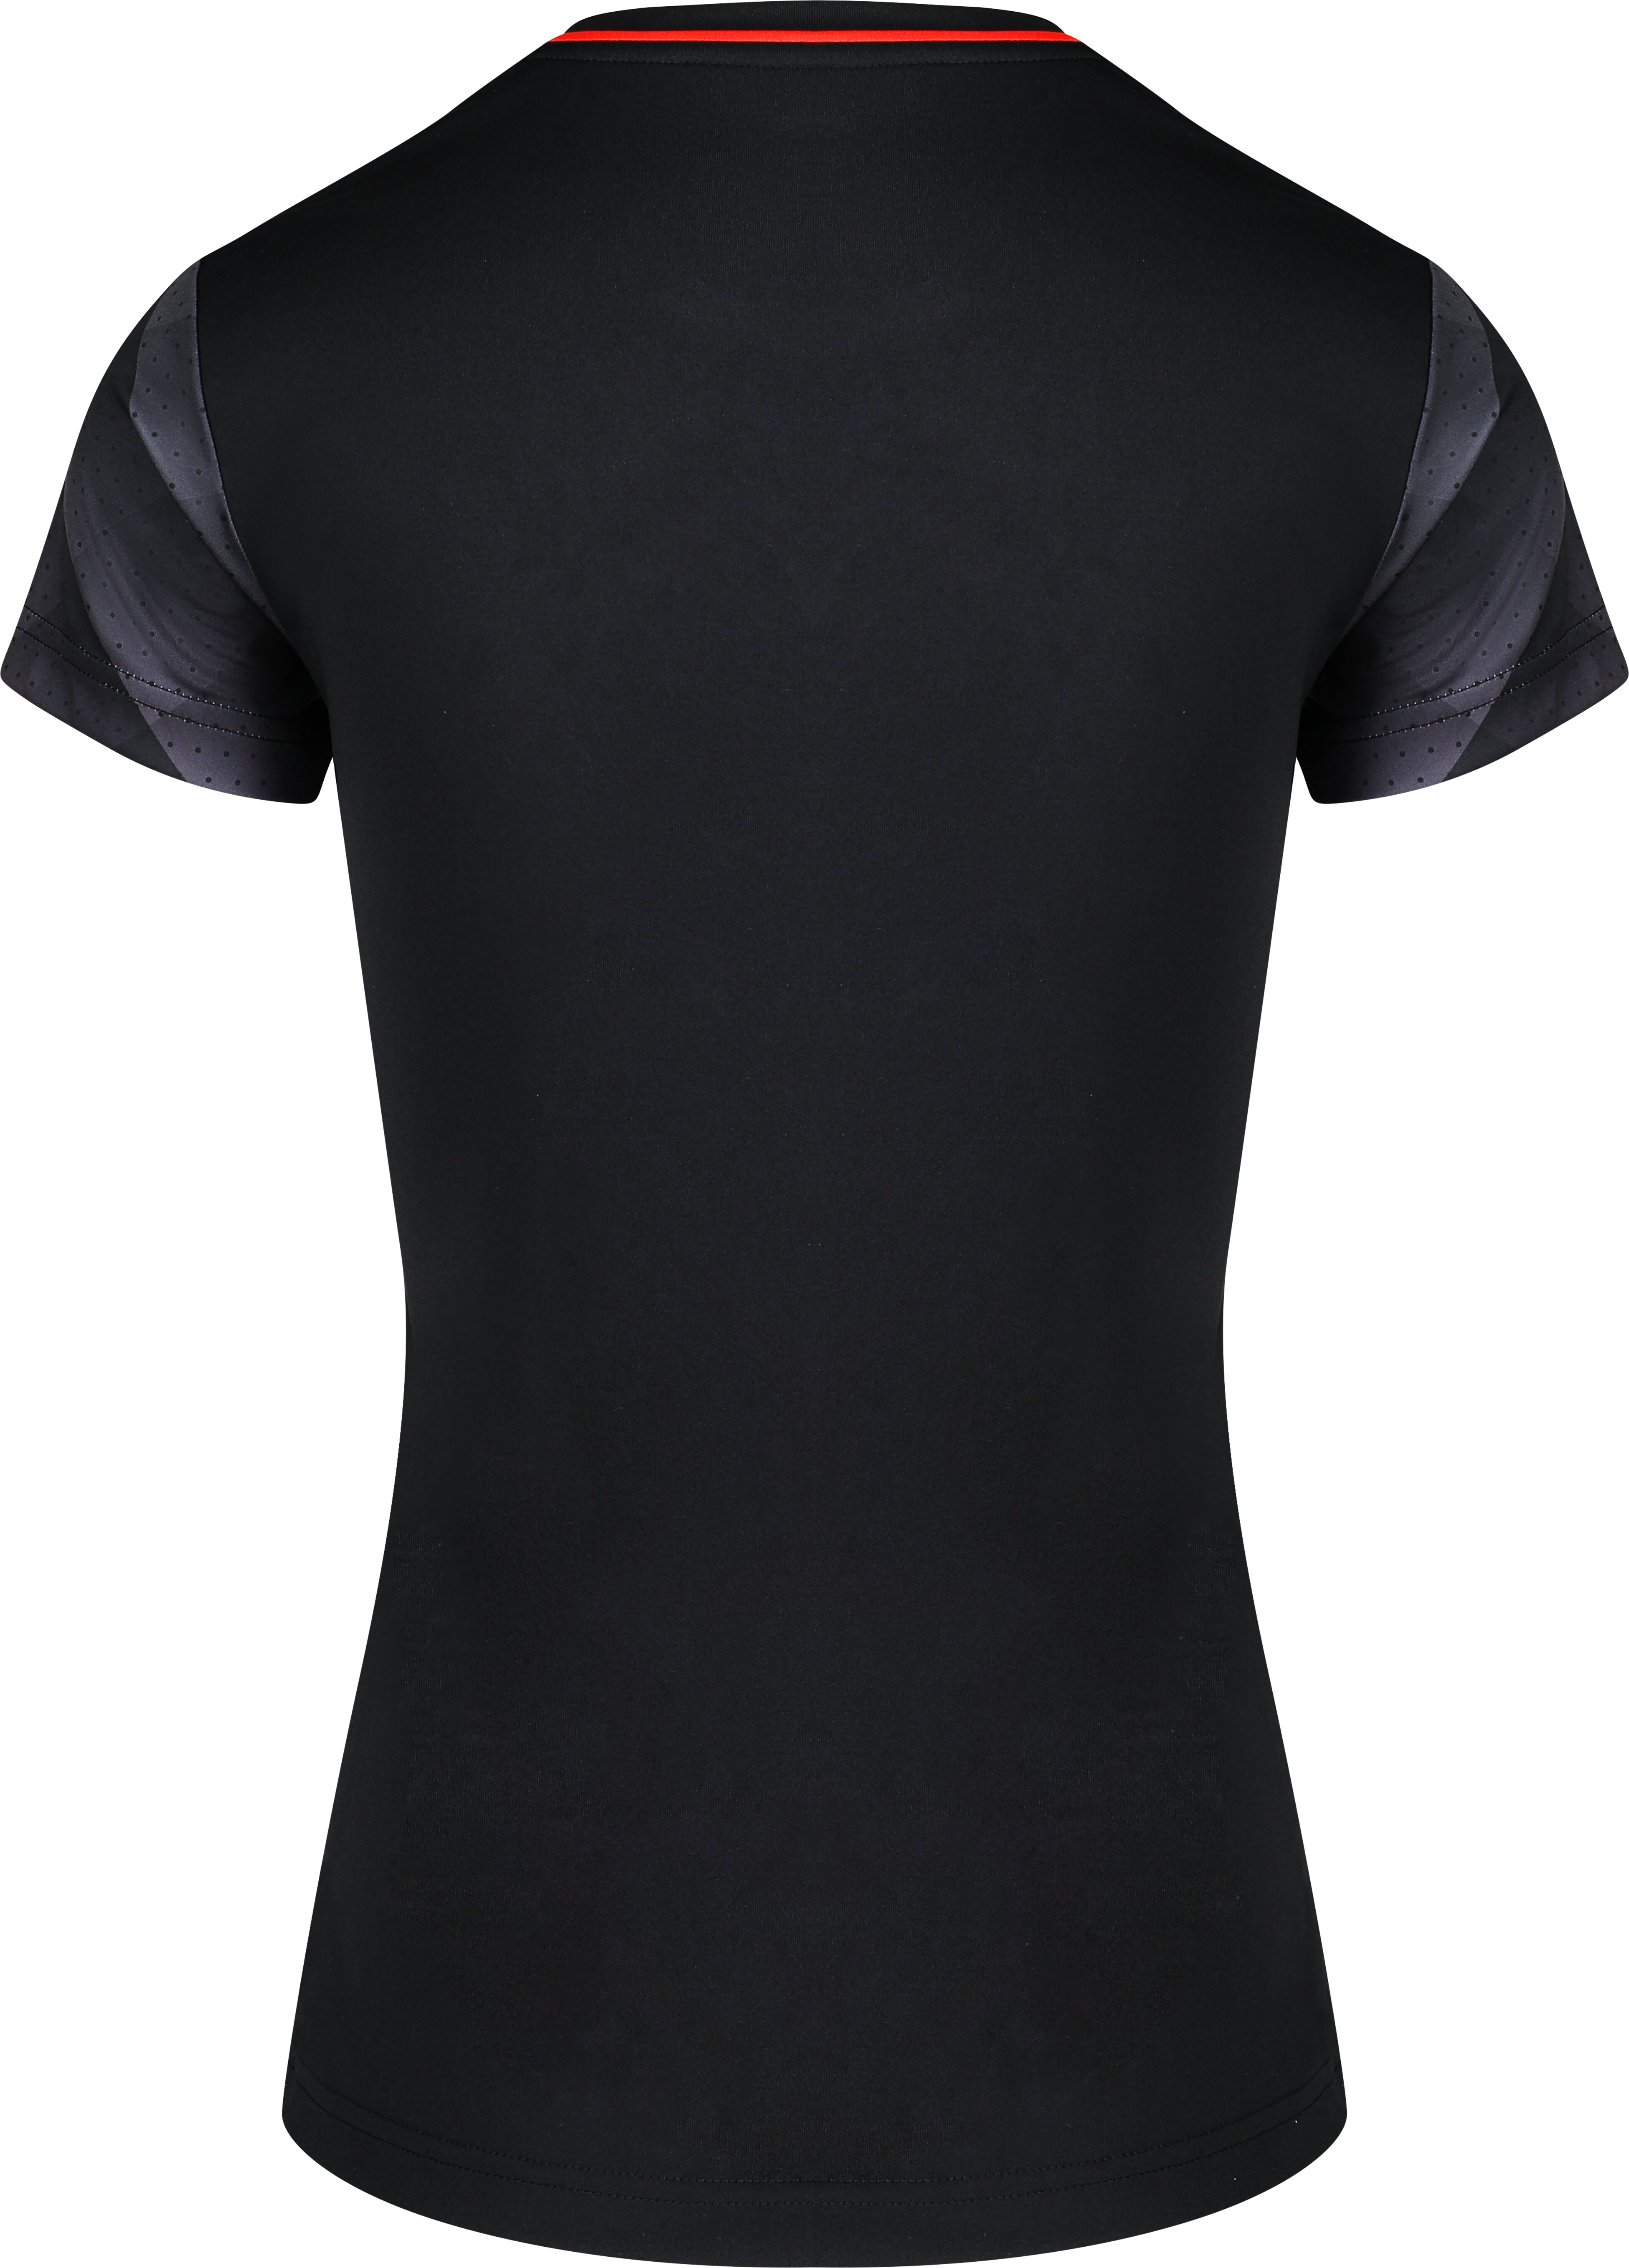 Damen-T-Shirt Victor T-14100 C Schwarz